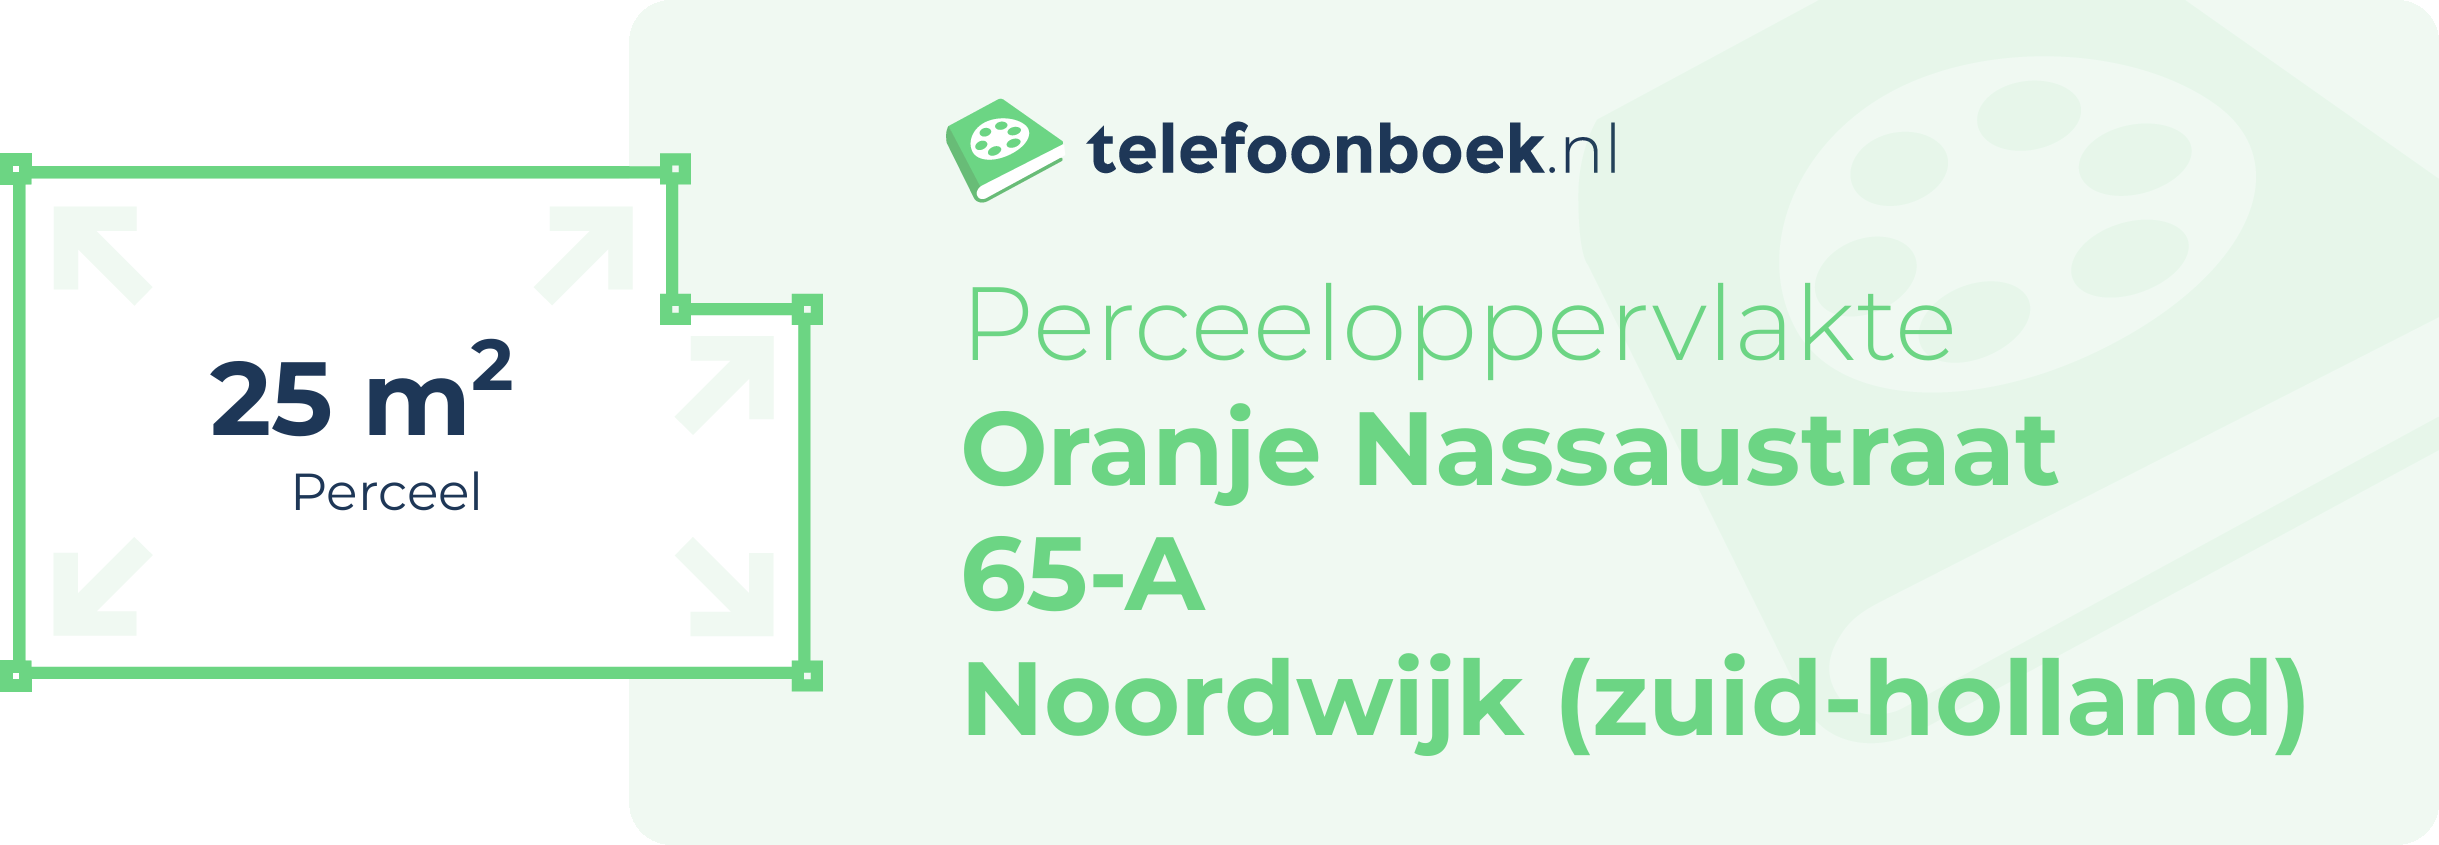 Perceeloppervlakte Oranje Nassaustraat 65-A Noordwijk (Zuid-Holland)